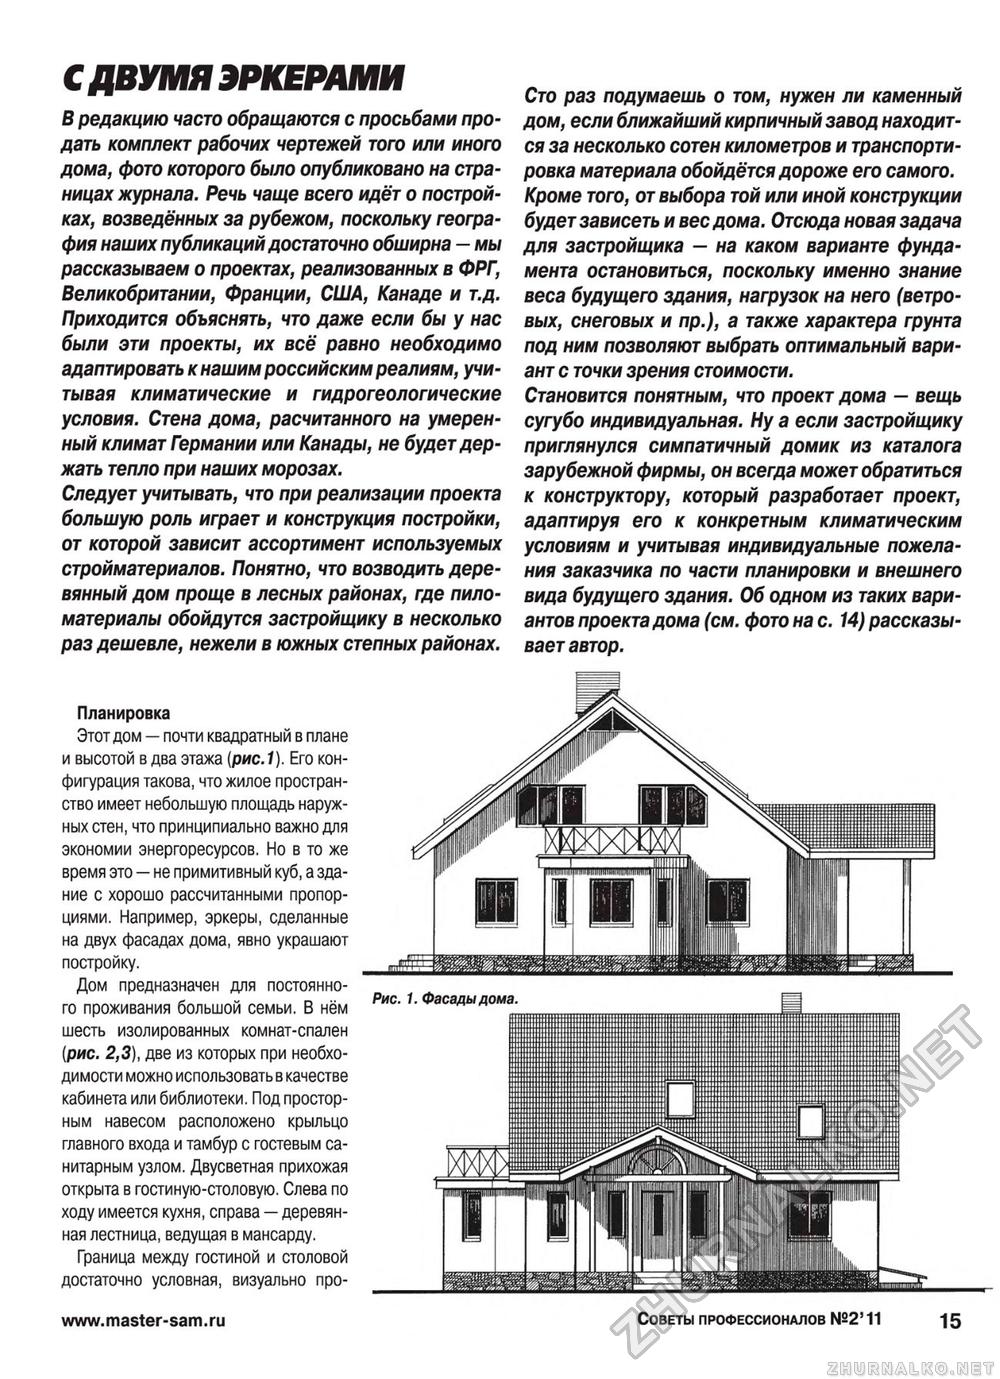 Советы профессионалов 2011-02, страница 15